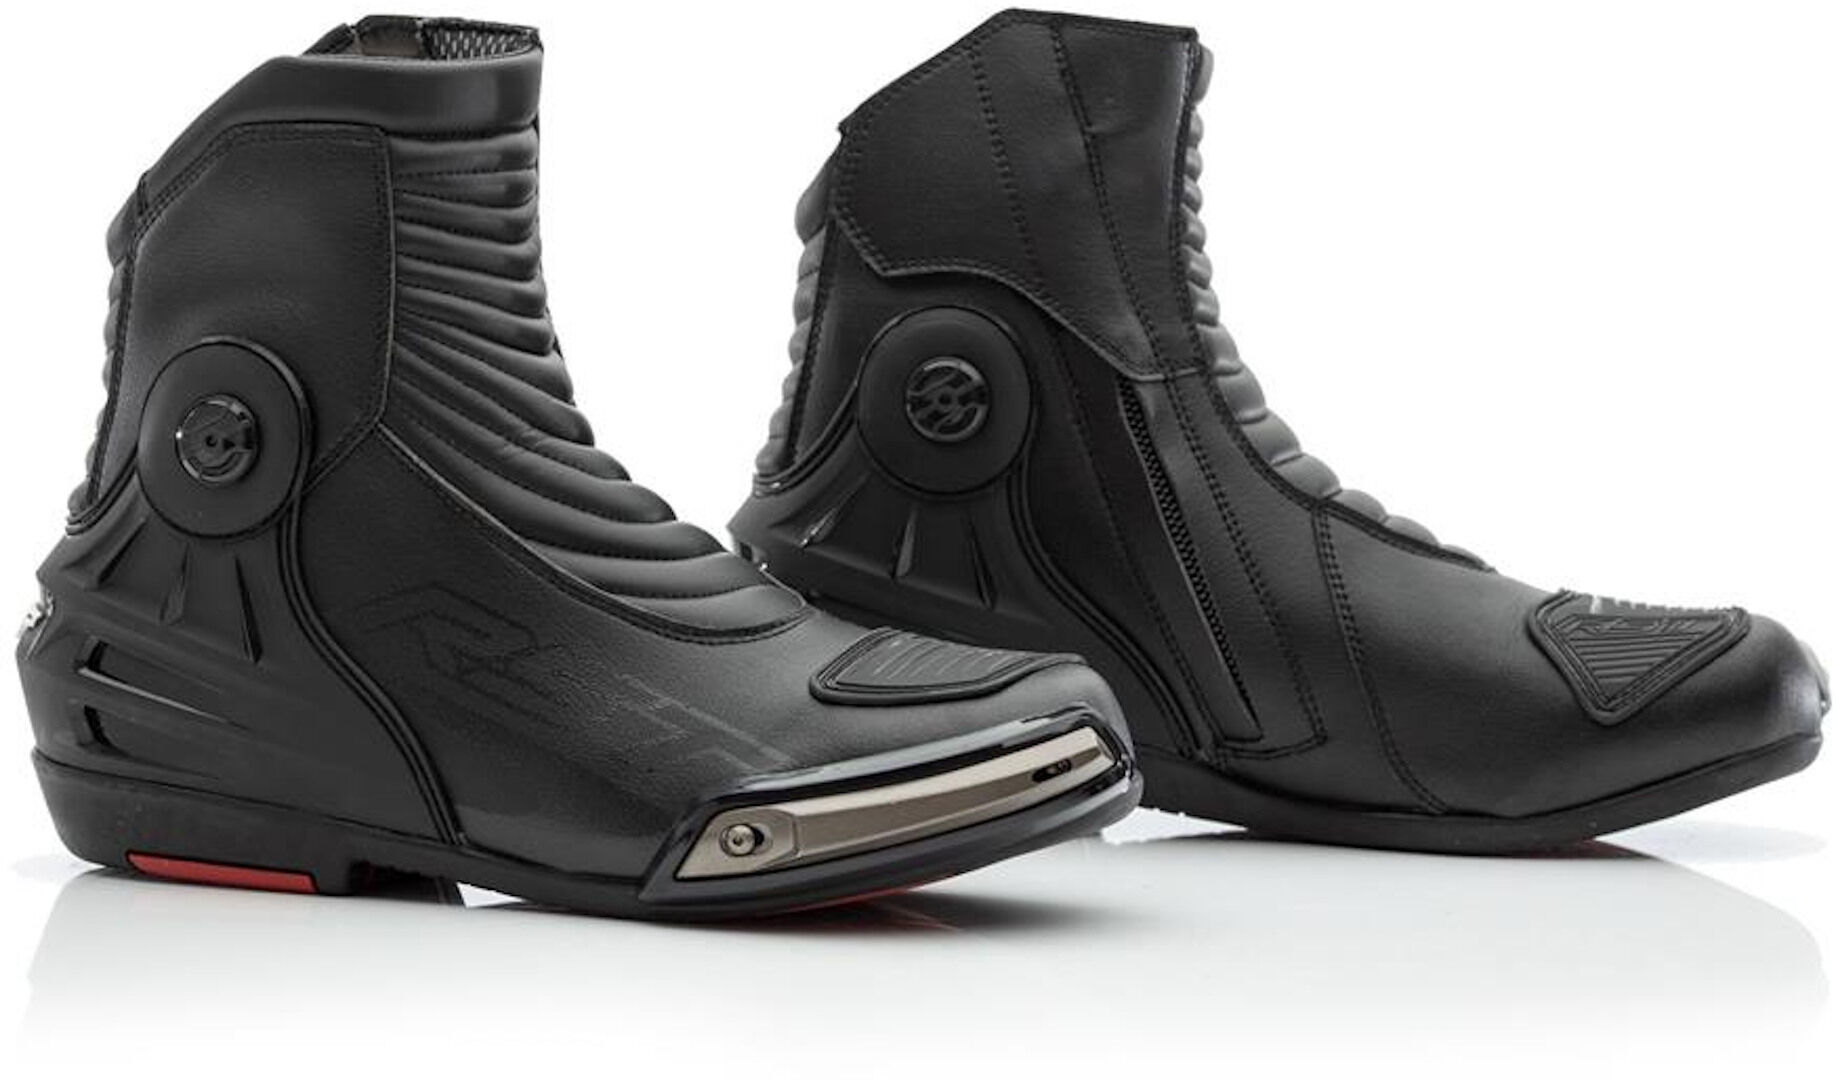 RST Tractech Evo 3 WP Zapatos de motocicleta - Negro (40)